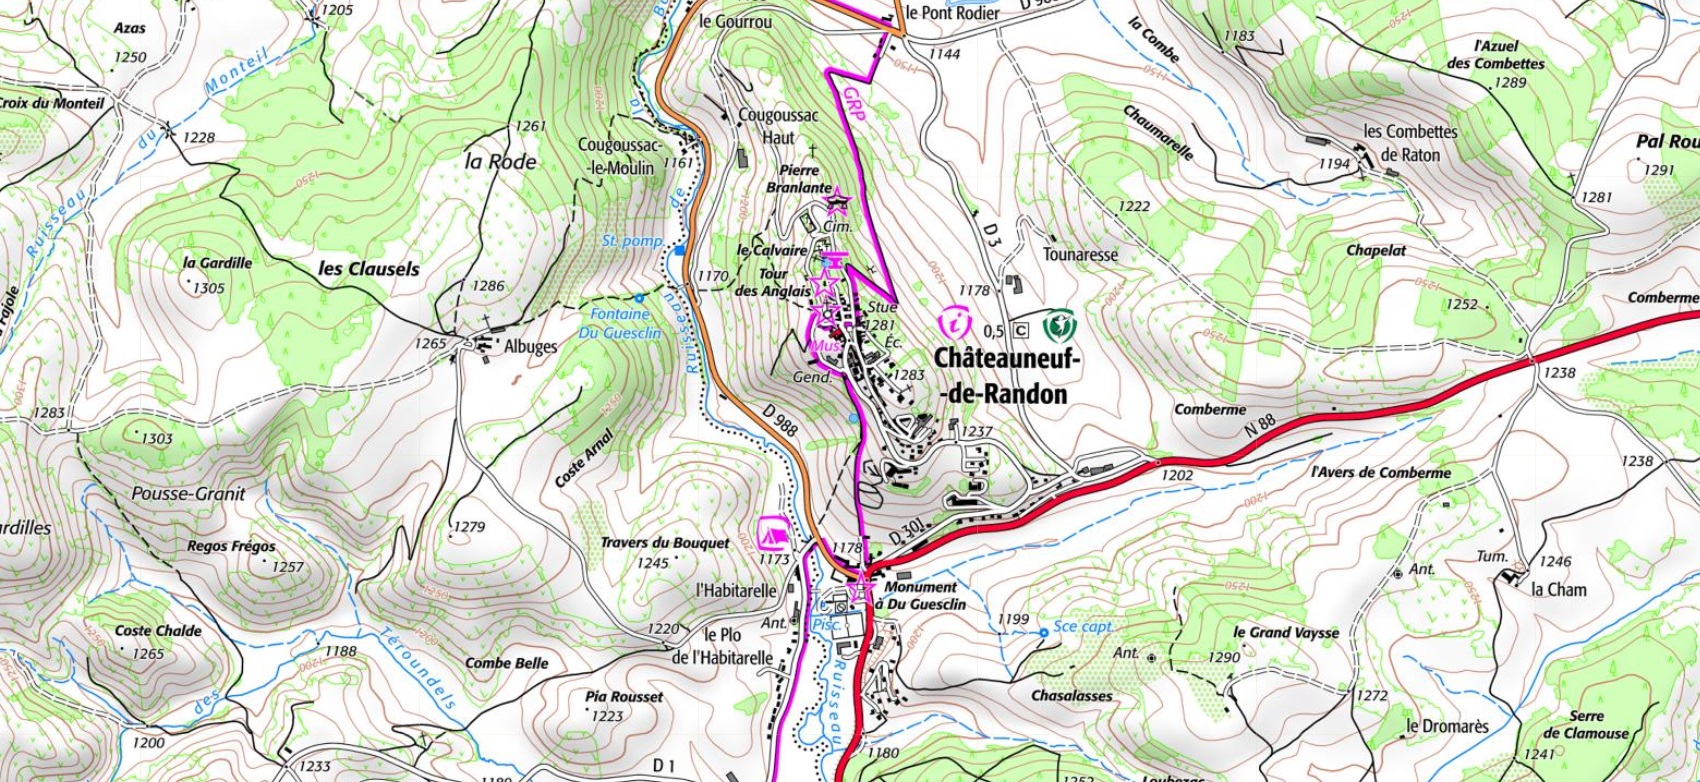 IGN Carte et plan du village de Châteauneuf de Randon en Lozère (Occitanie). Chemins de randonnées: Tour de Margeride et Tour du Gévaudan.